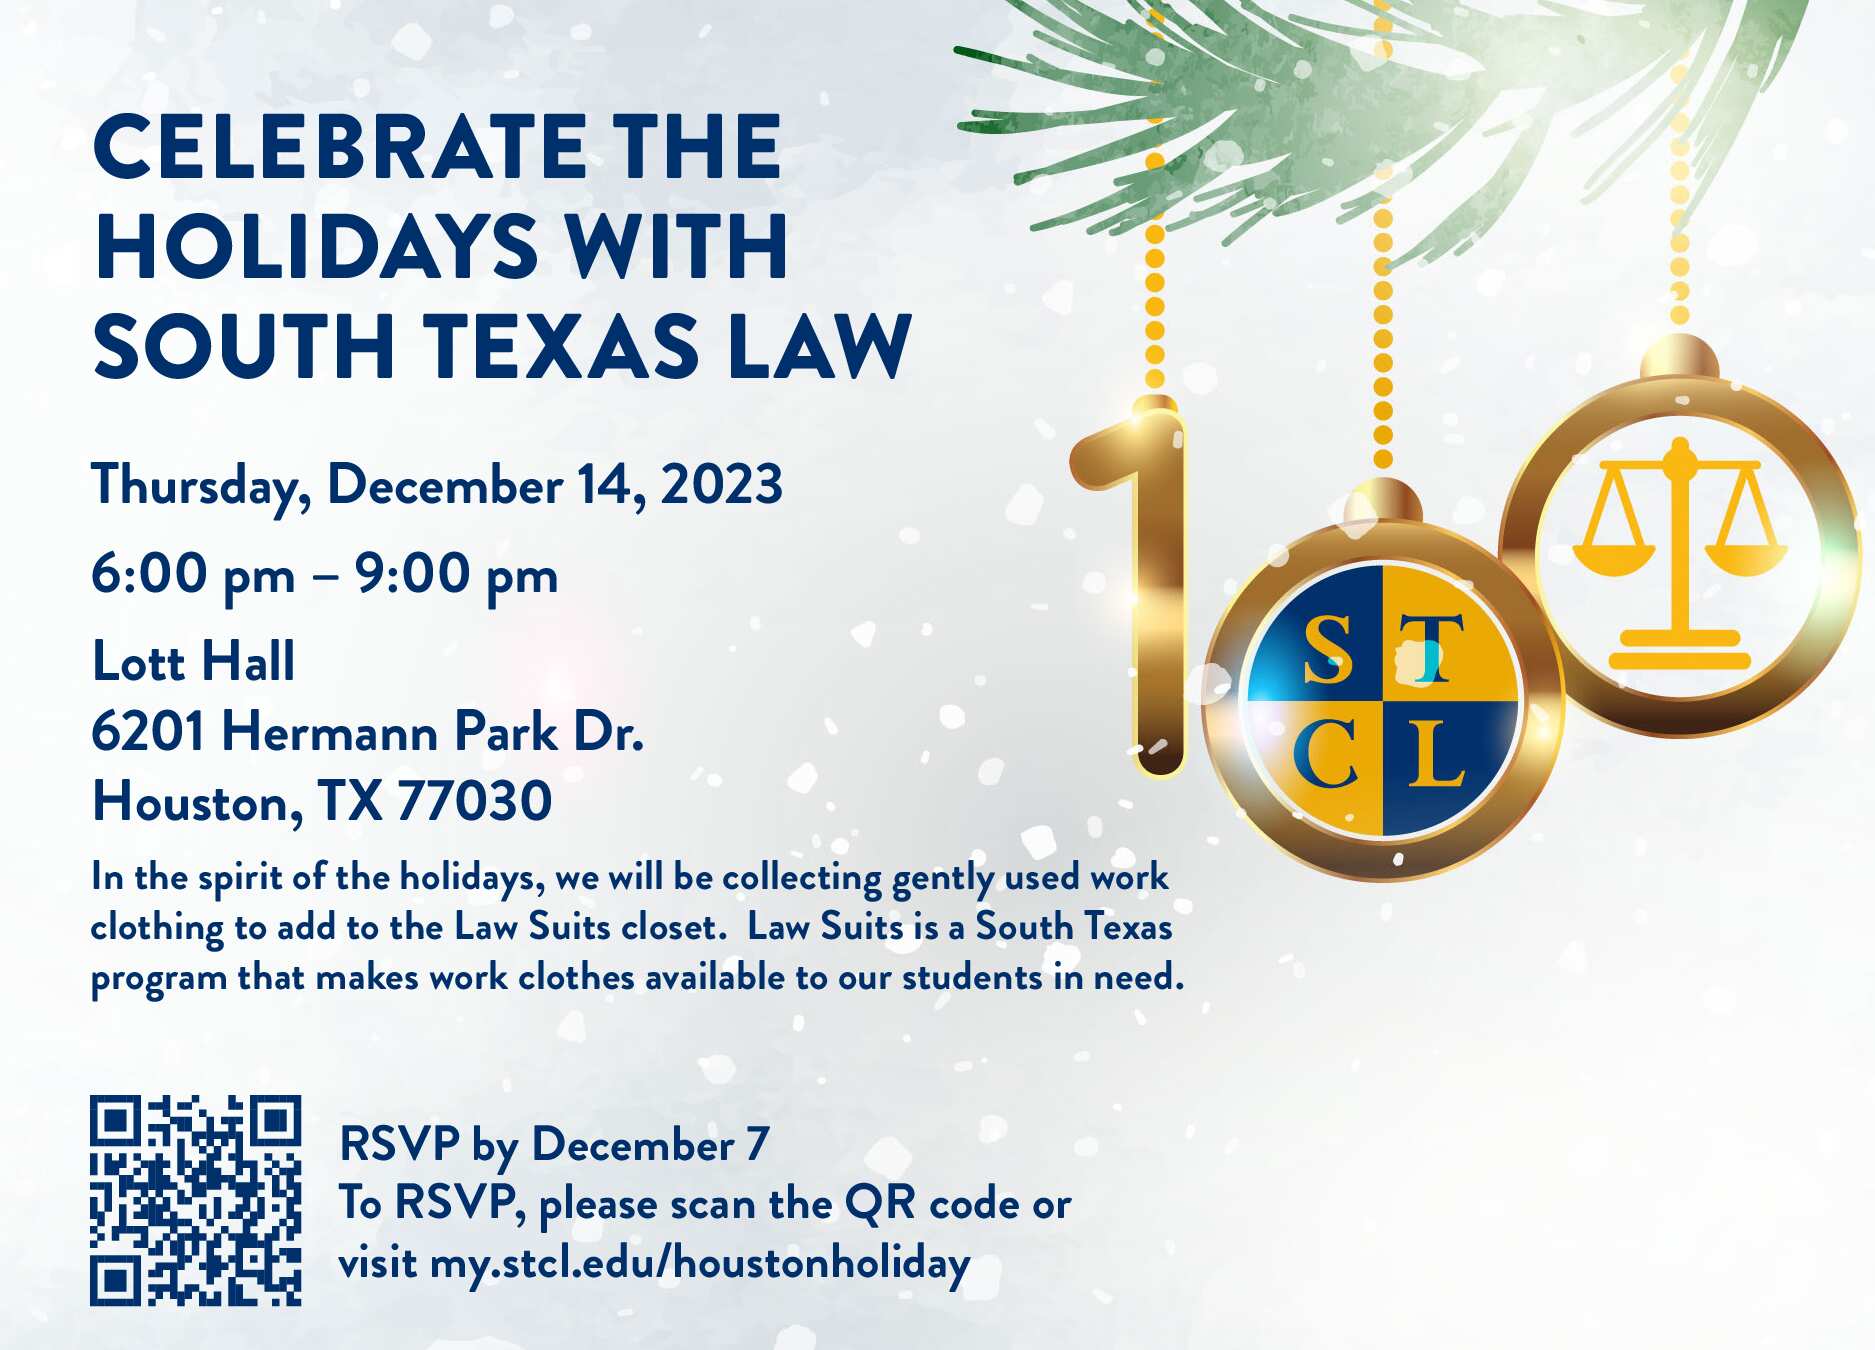 Houston Holiday Party Invite